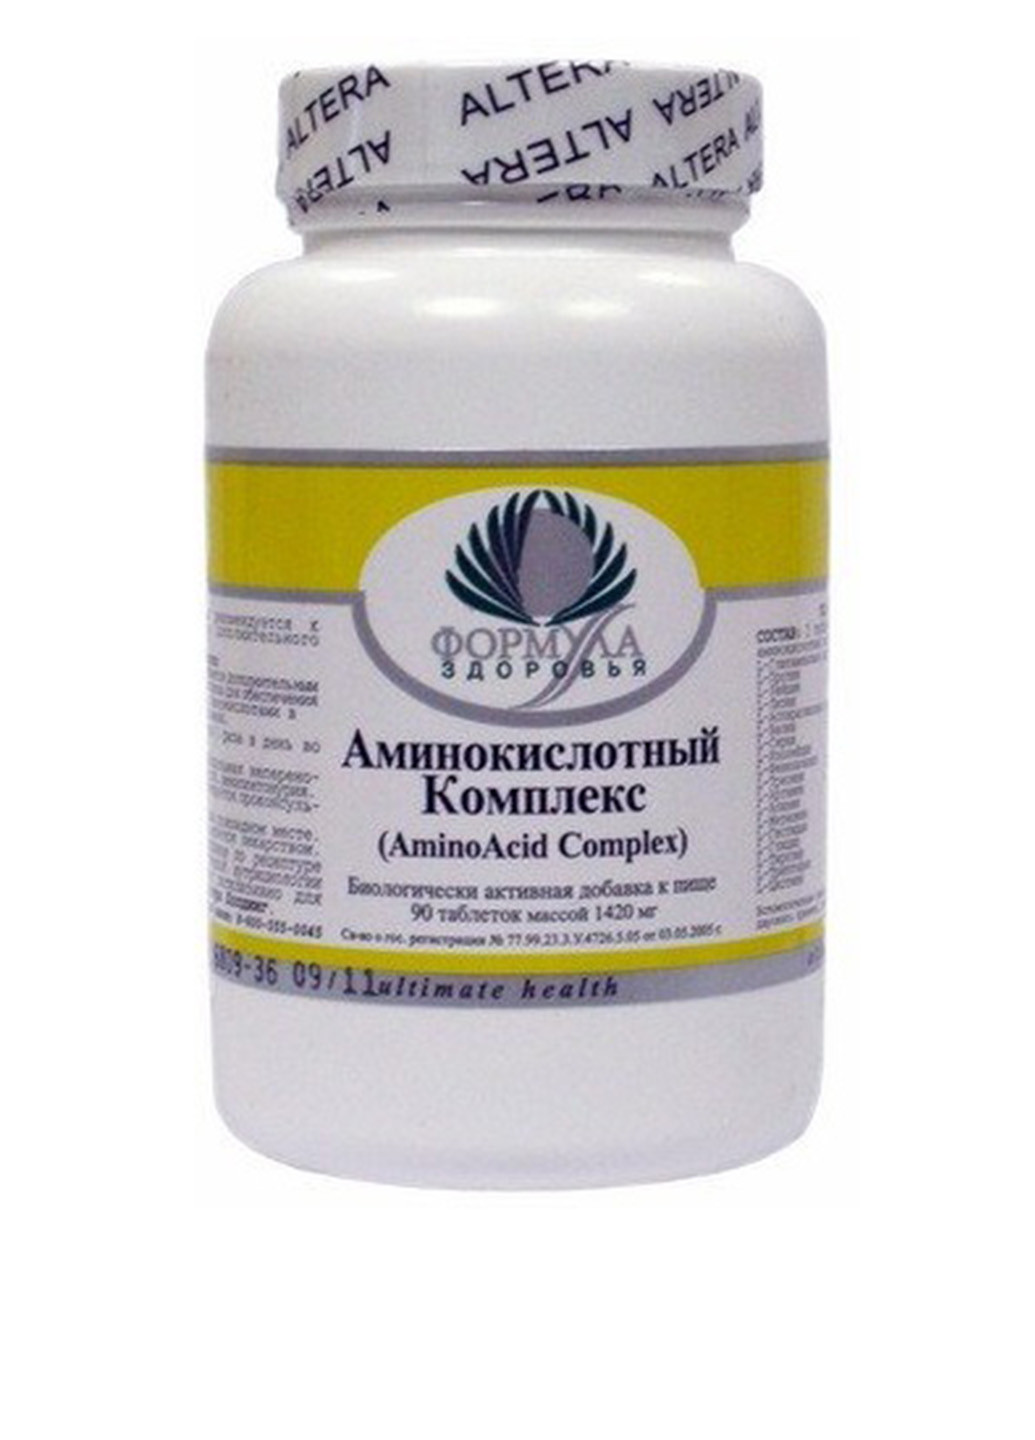 Аминокислотный Комплекс, 90 таблеток Archon Vitamin Corporation (16607872)